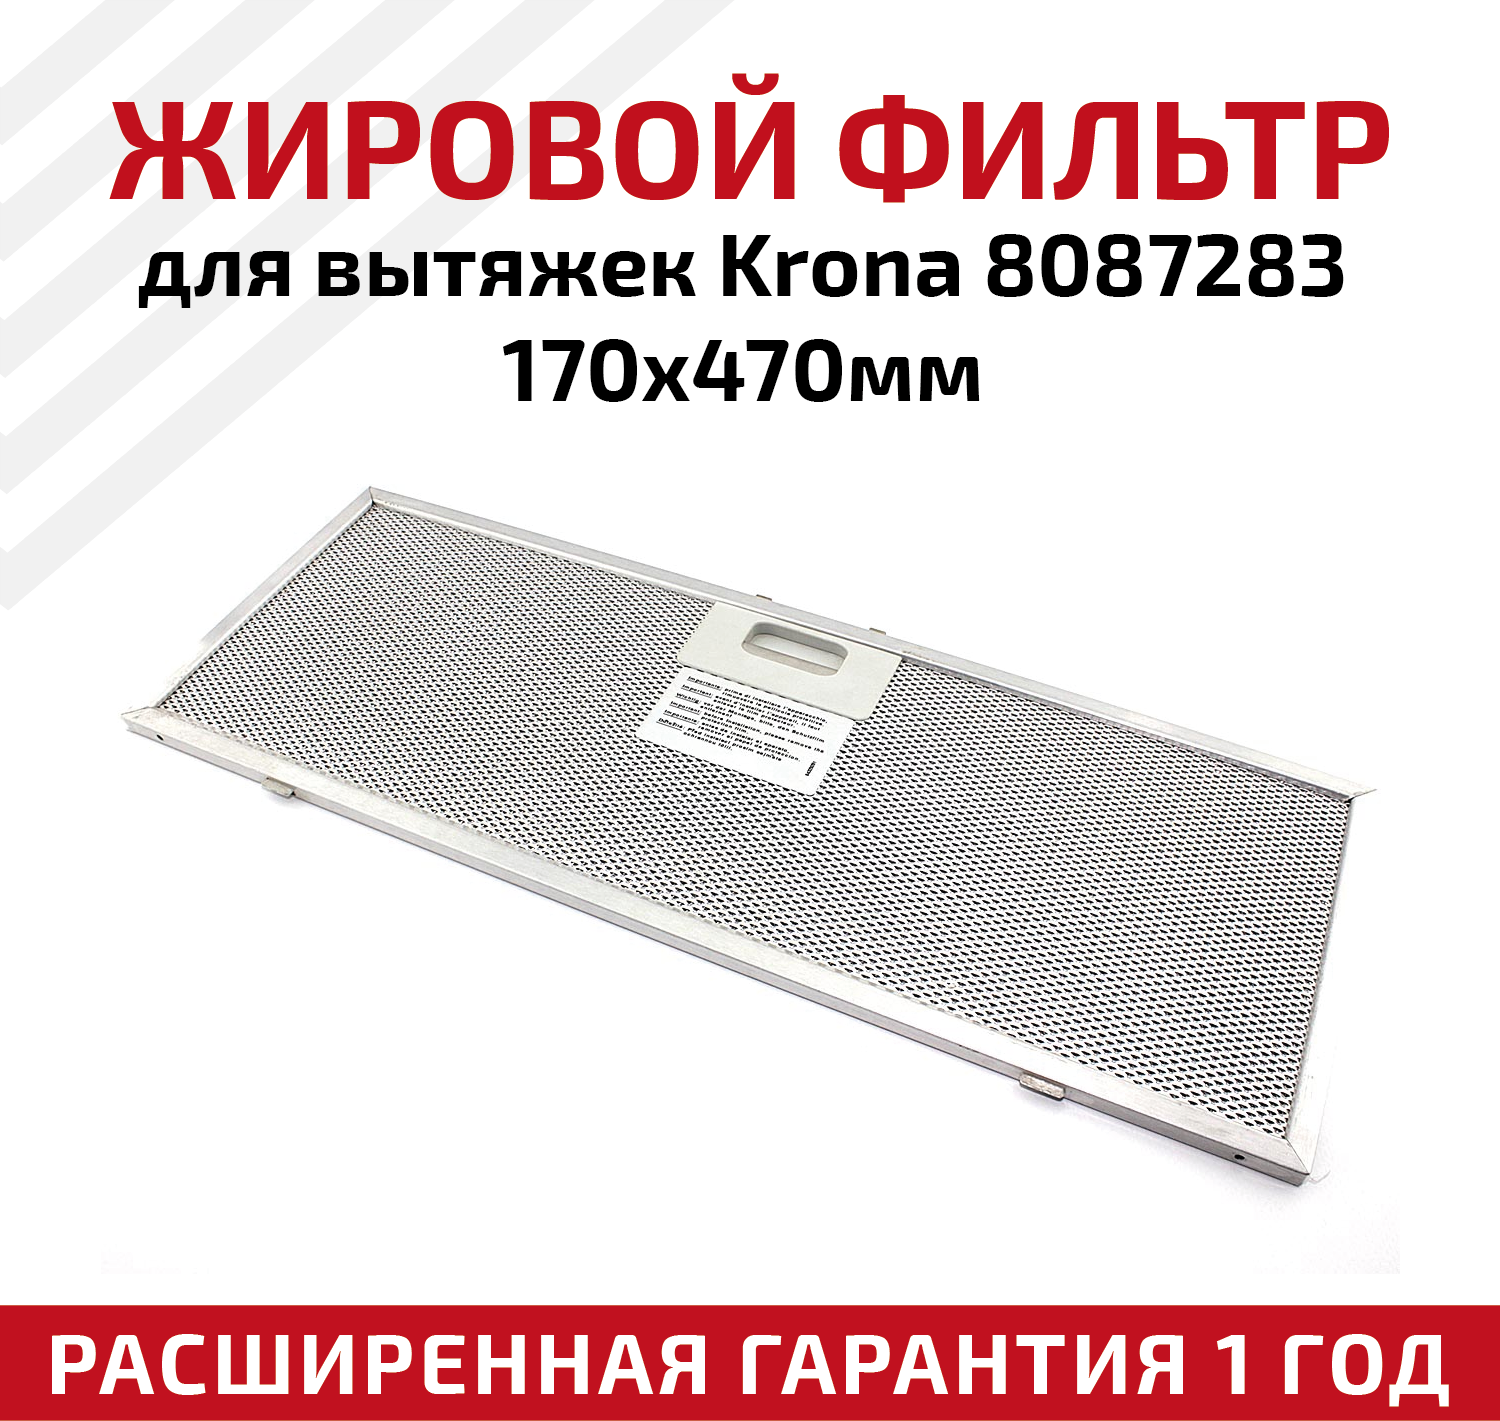 Жировой фильтр (кассета) алюминиевый (металлический) рамочный для вытяжек Krona 8087283, многоразовый, 170х470мм